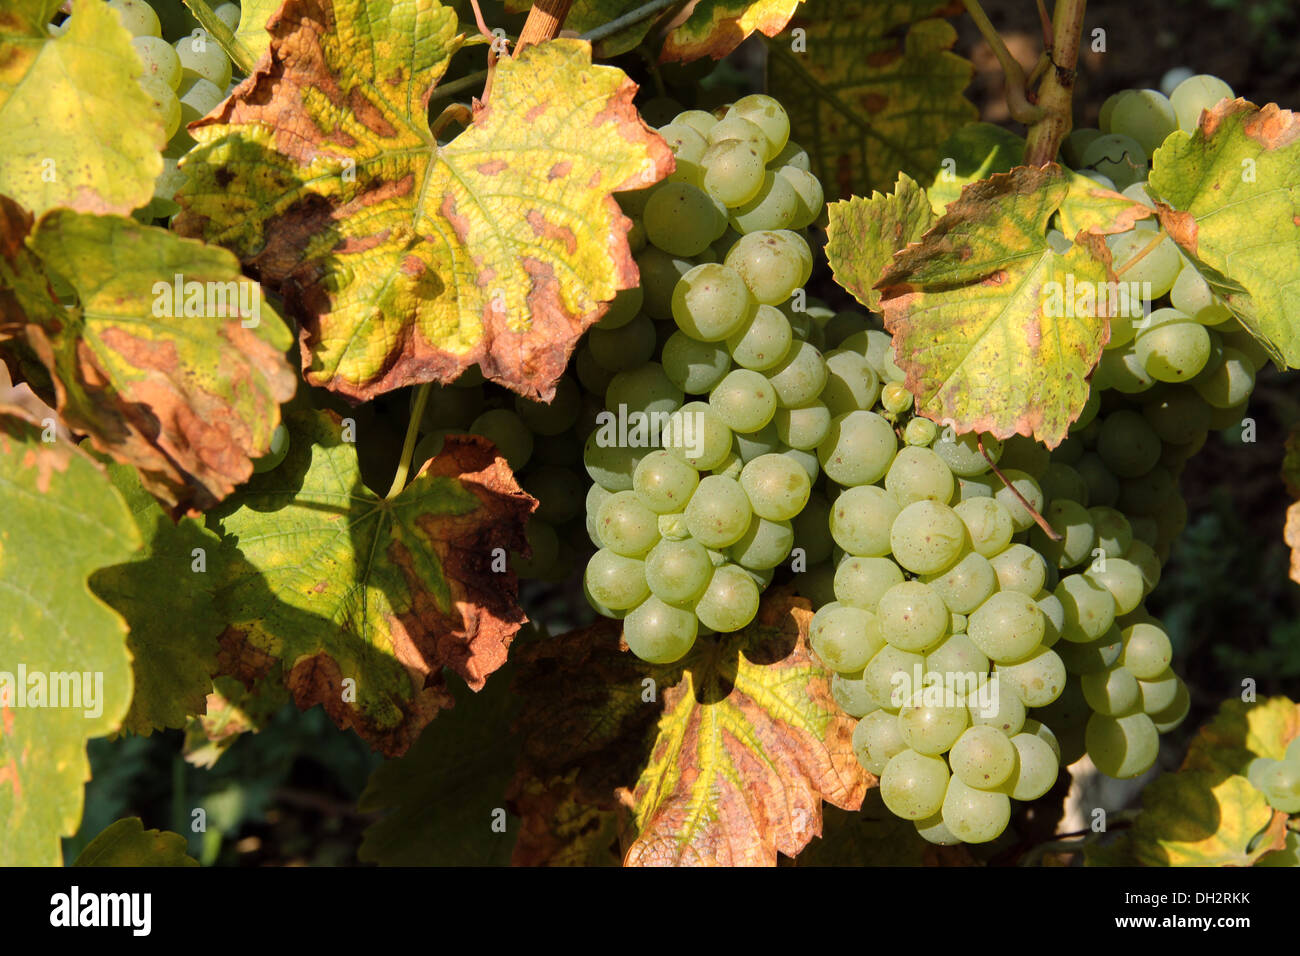 Colpo all'aperto che mostra alcuni grappoli di uva bianca in un ambiente soleggiato Foto Stock